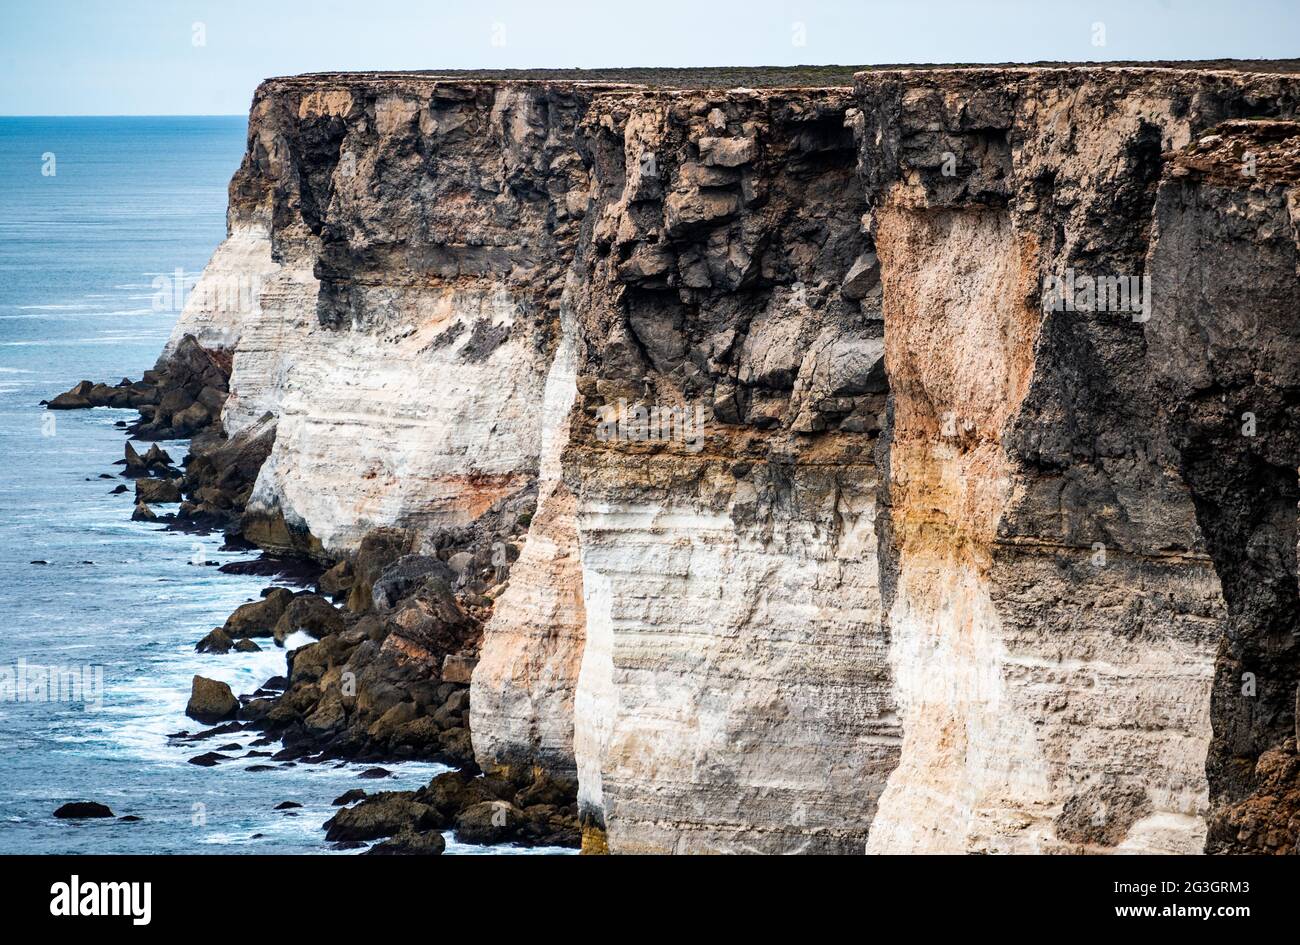 Die Bunda Cliffs, die hier am Head of Bight zu sehen sind, bestehen aus drei Kalksteineinheiten und erstrecken sich 100 km entlang der Great Australian Bight. Stockfoto